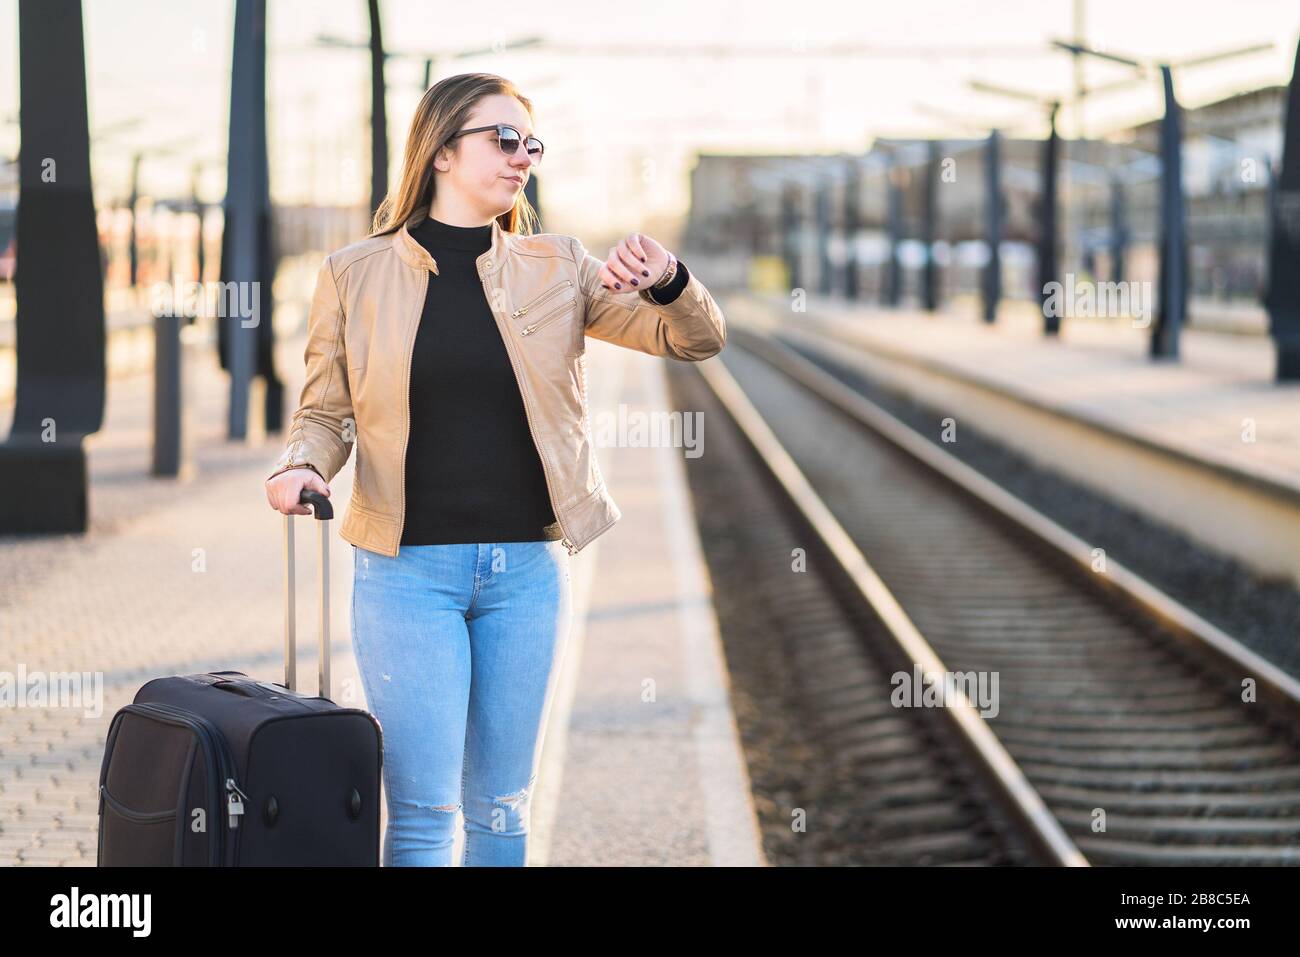 Donna infelice e frustrata che guarda il tempo e guarda alla stazione ferroviaria. Passeggero arrabbiato sulla piattaforma ferroviaria. Foto Stock